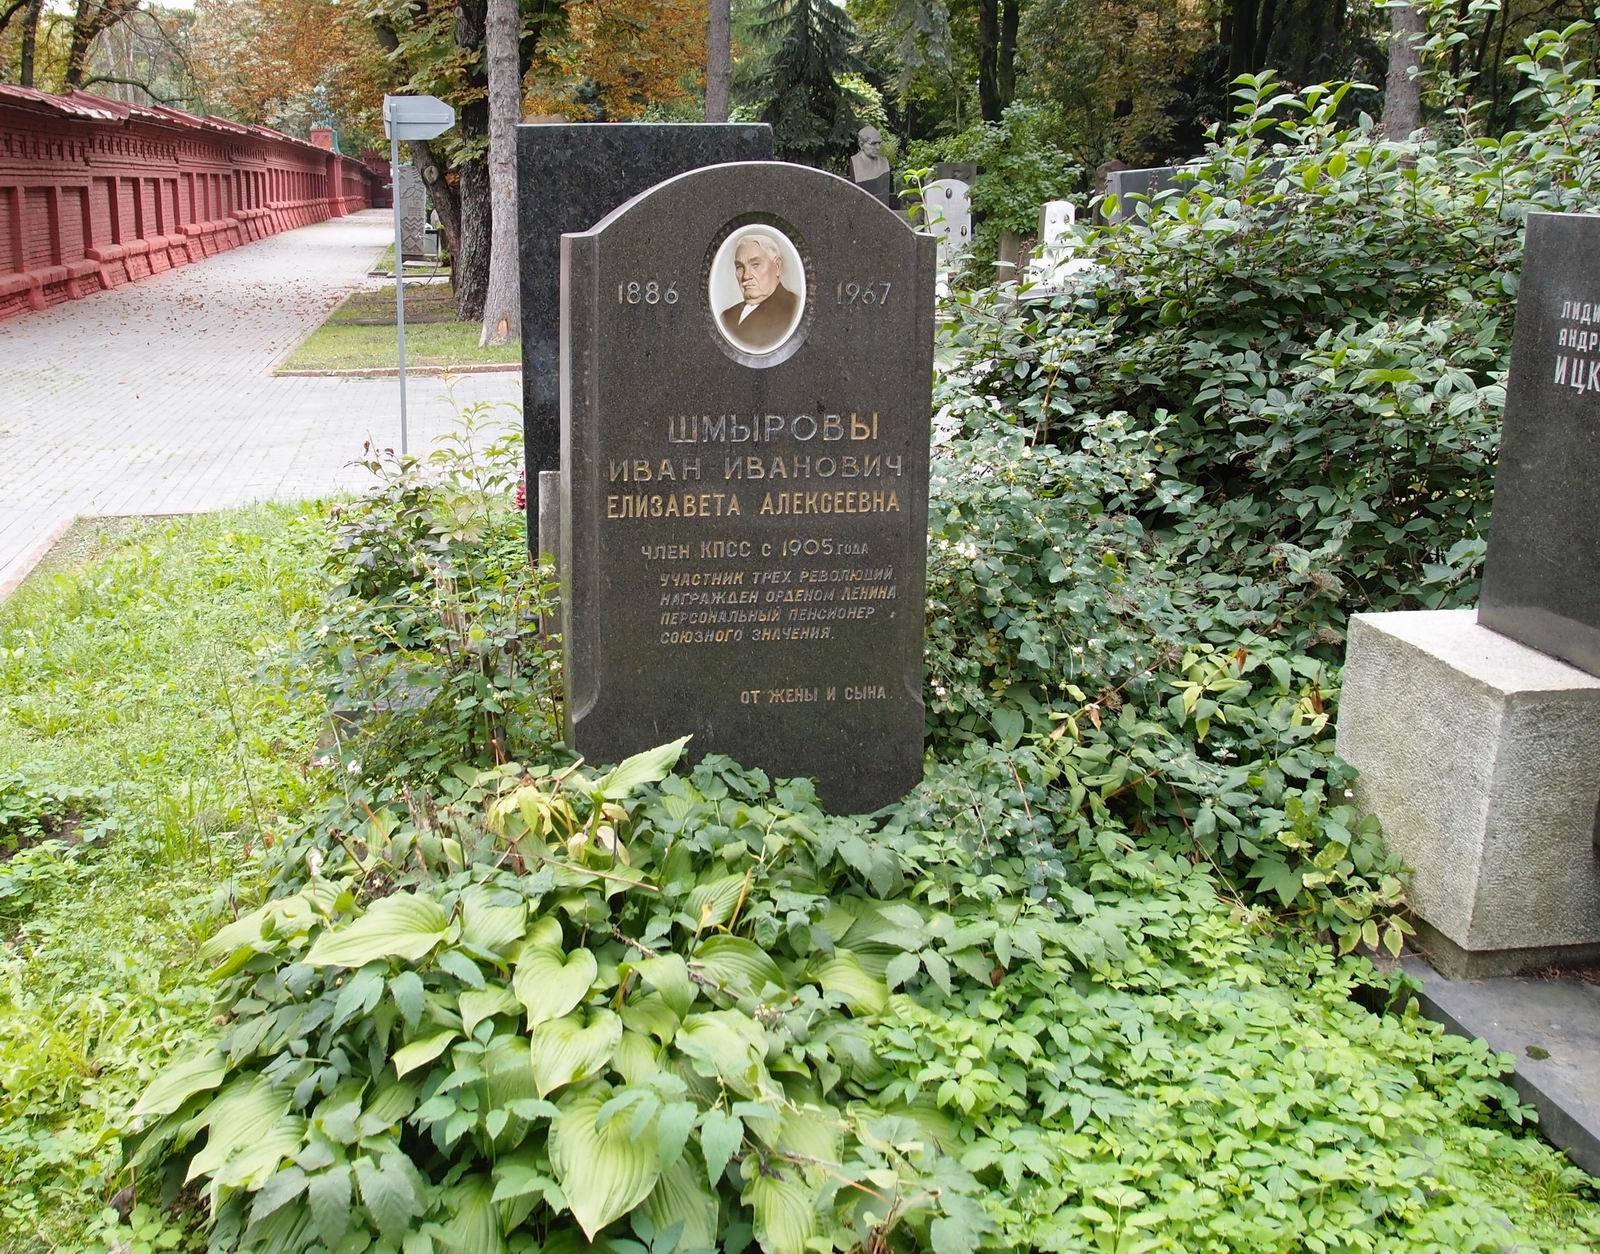 Памятник на могиле Шмырова И.И. (1886-1967), на Новодевичьем кладбище (7-2-1).